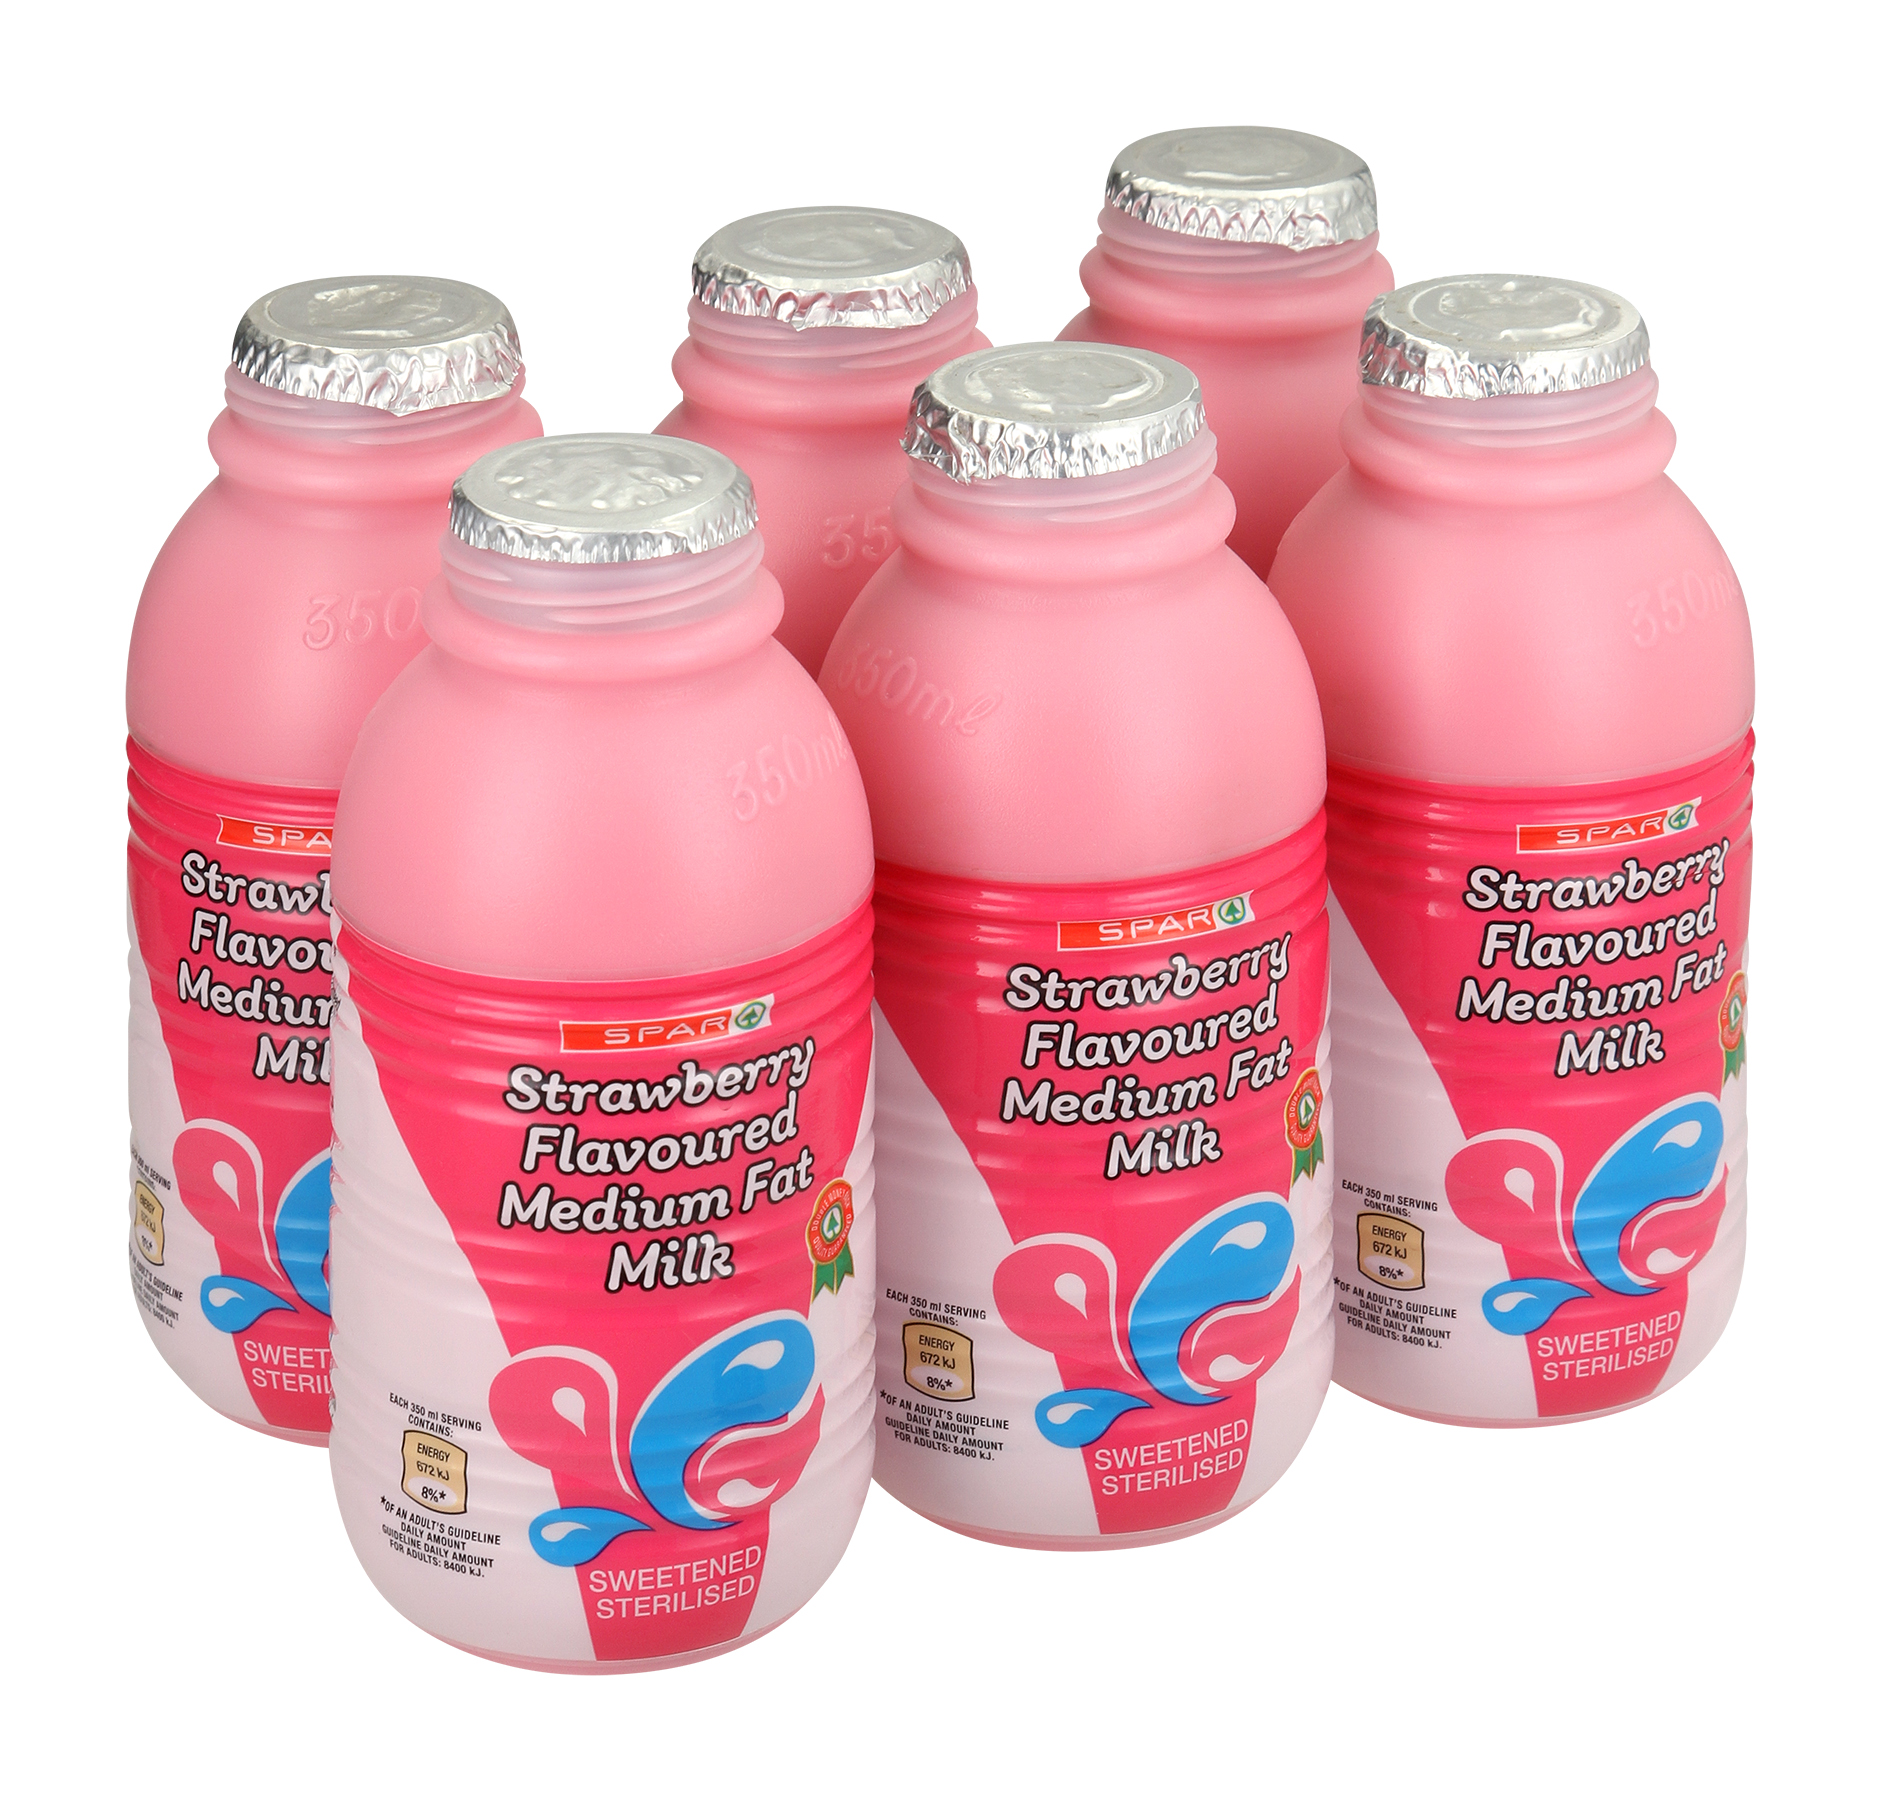 flavoured medium fat milk strawberry 6s